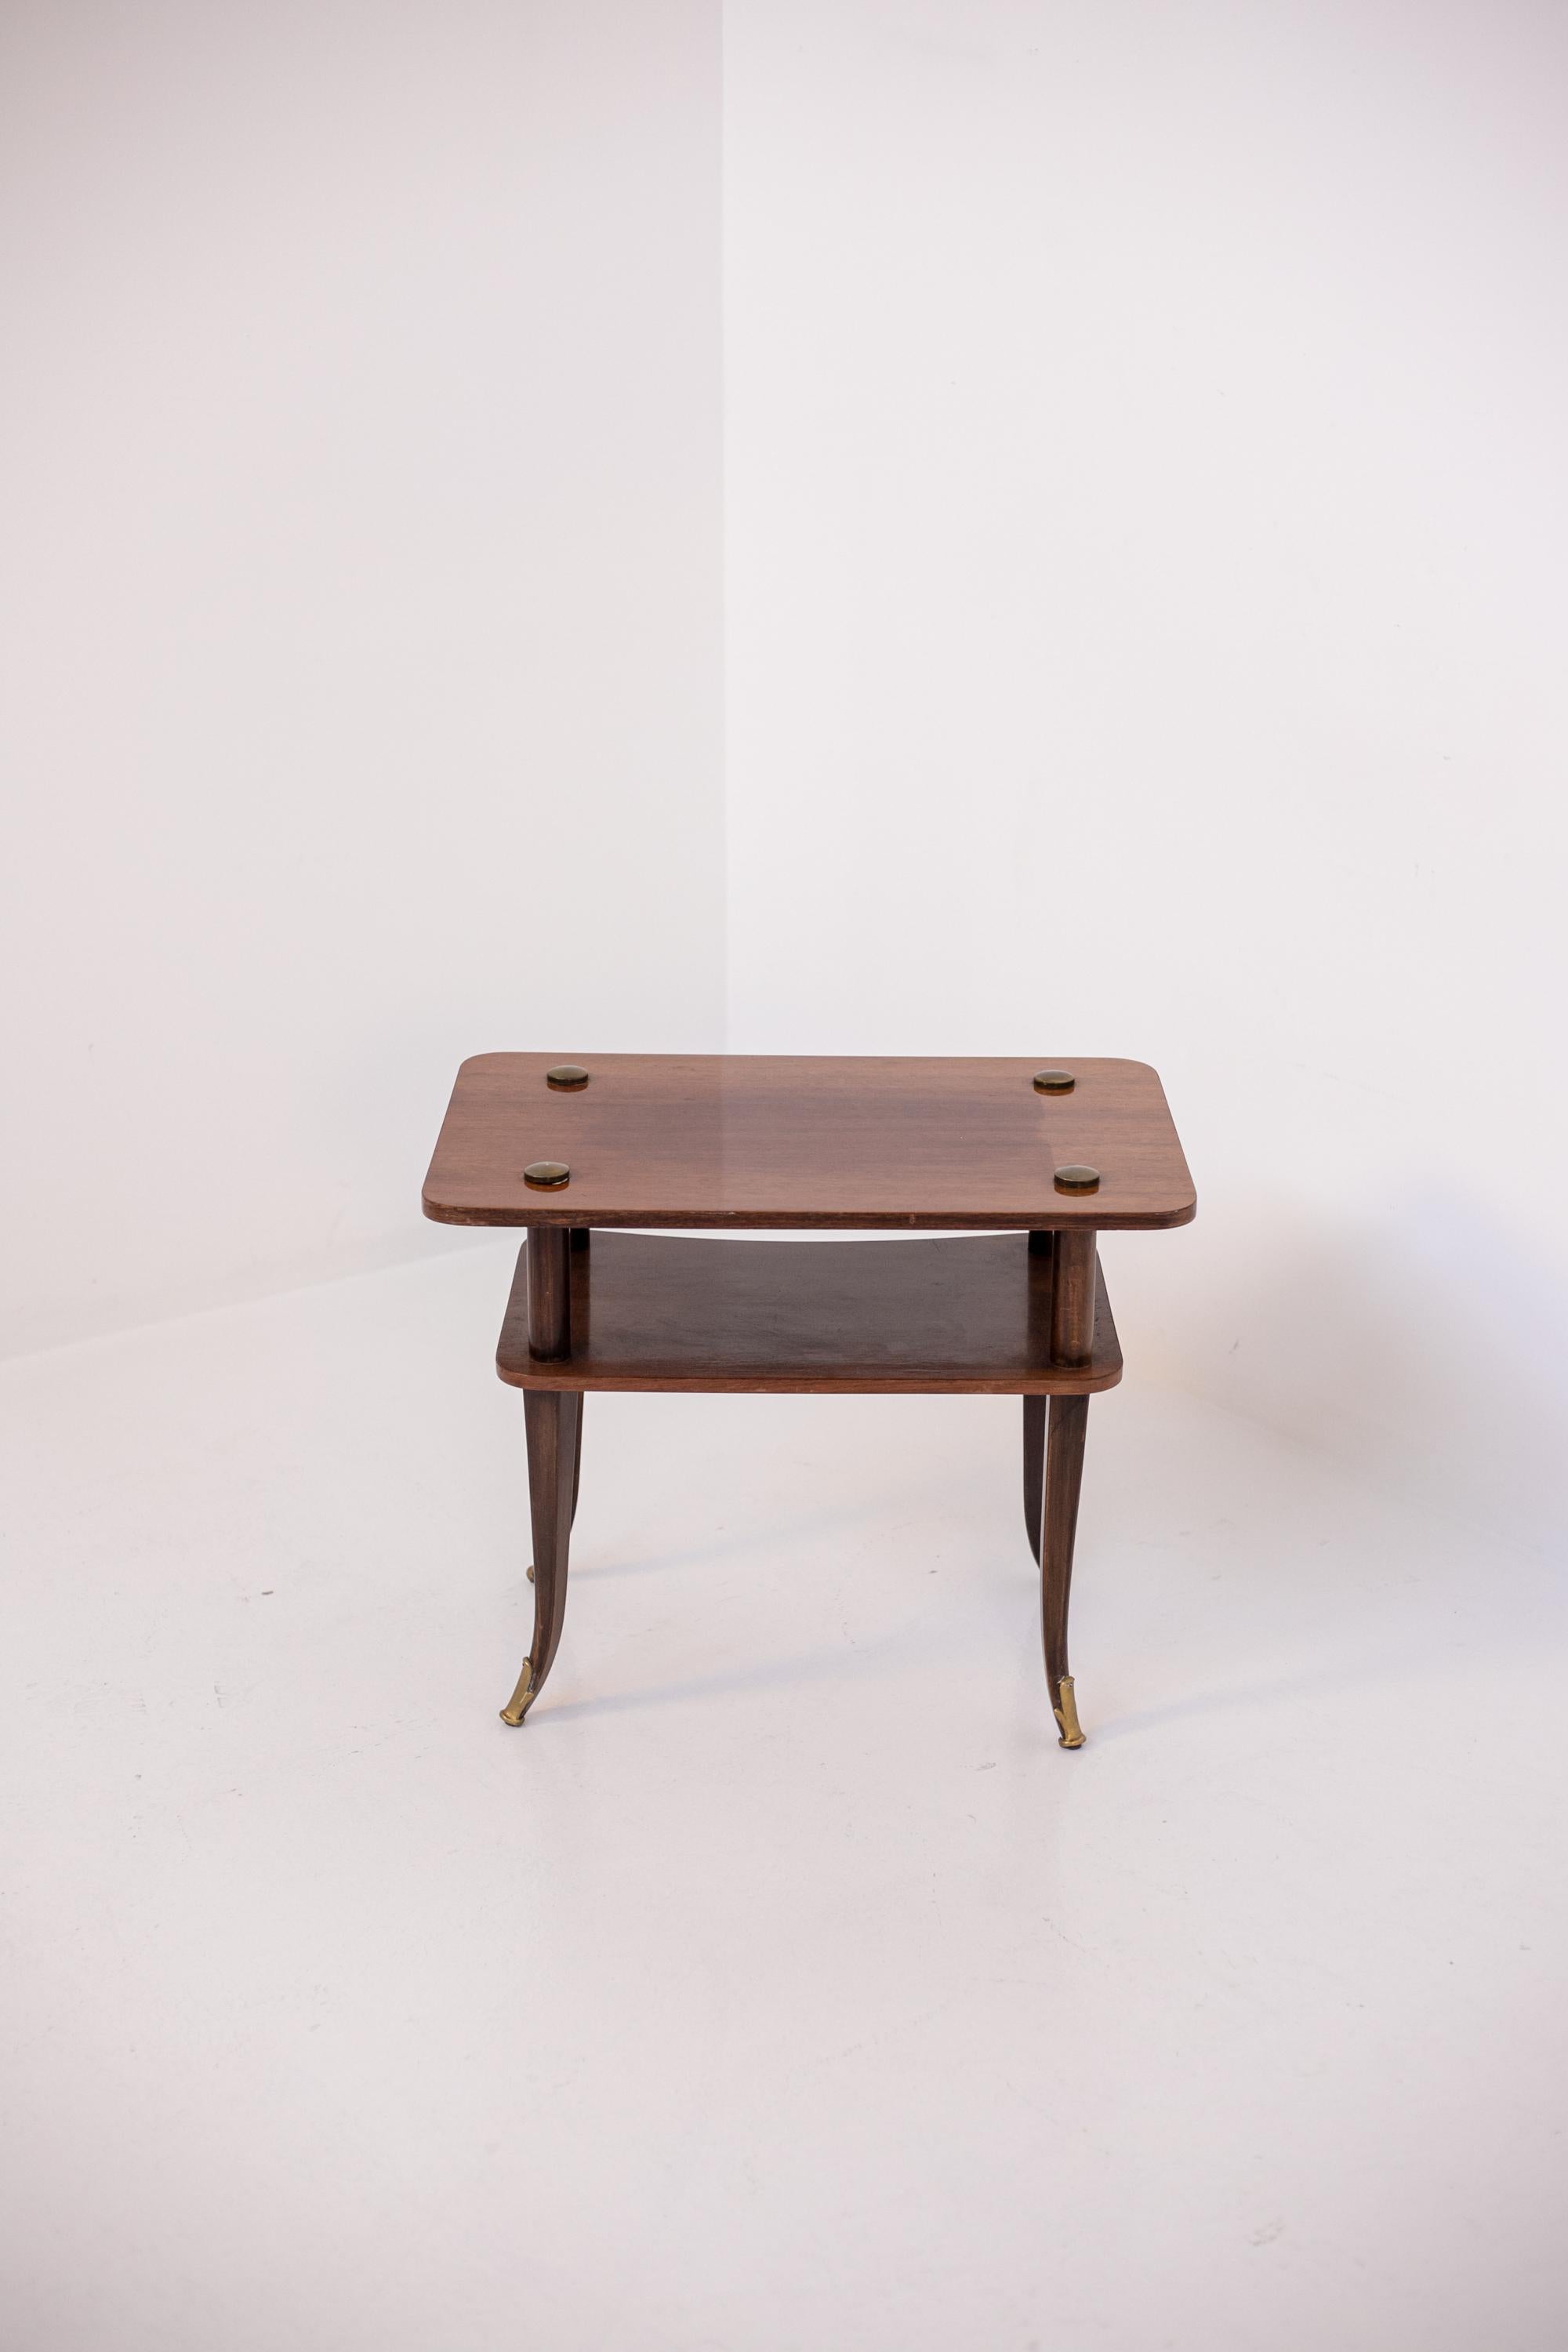 Jolie table basse italienne en bois des années 1950. La table basse est fabriquée en bois et a une forme rectangulaire. La particularité de la table basse est dans sa réalisation avec deux étagères avec ses quatre pieds légèrement courbés vers